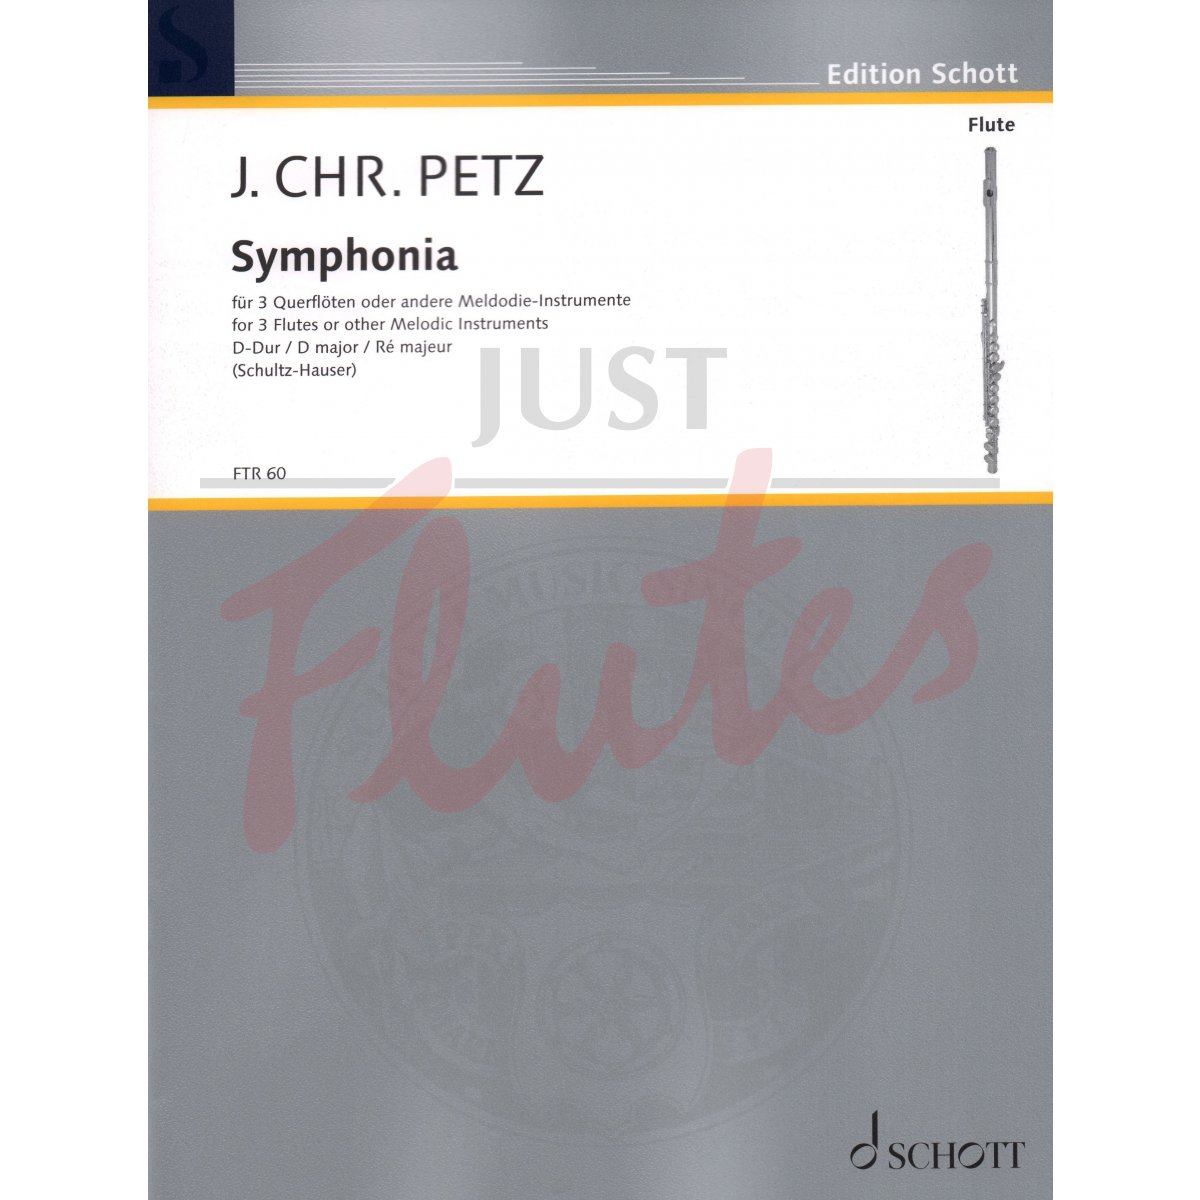 Symphonia in D major for Three Flutes